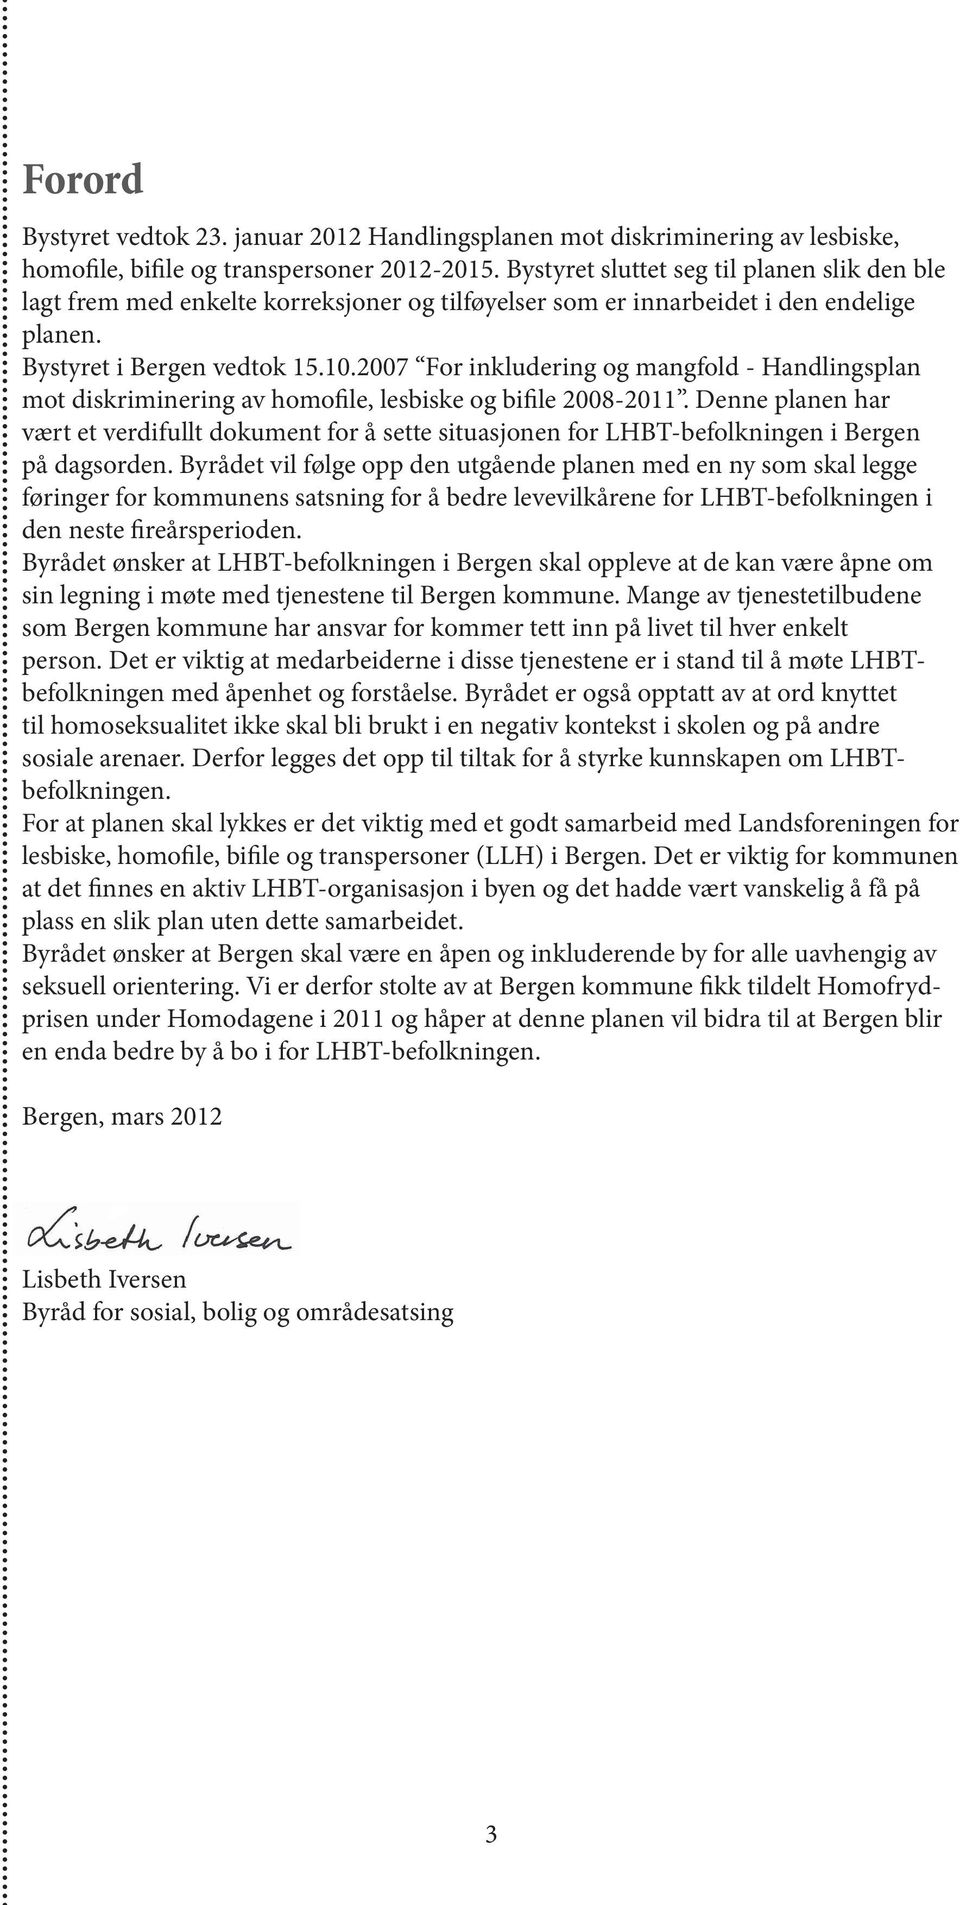 2007 For inkludering og mangfold - Handlingsplan mot diskriminering av homofile, lesbiske og bifile 2008-2011.